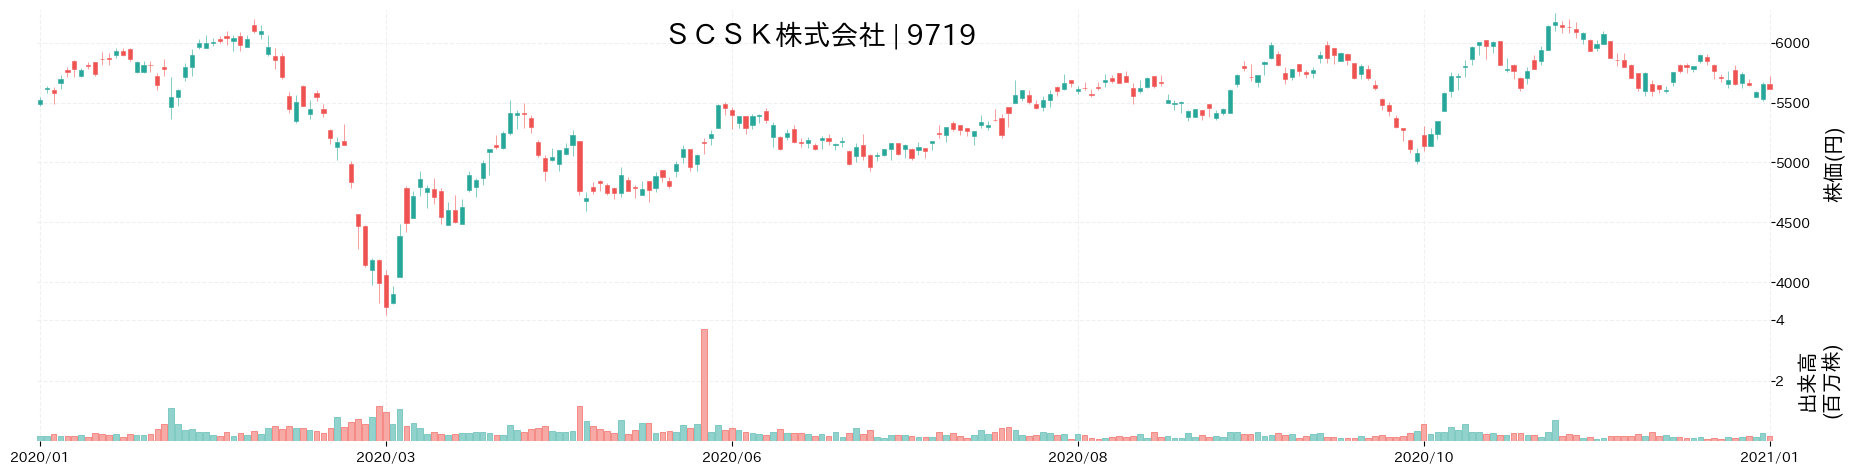 SCSKの株価推移(2020)